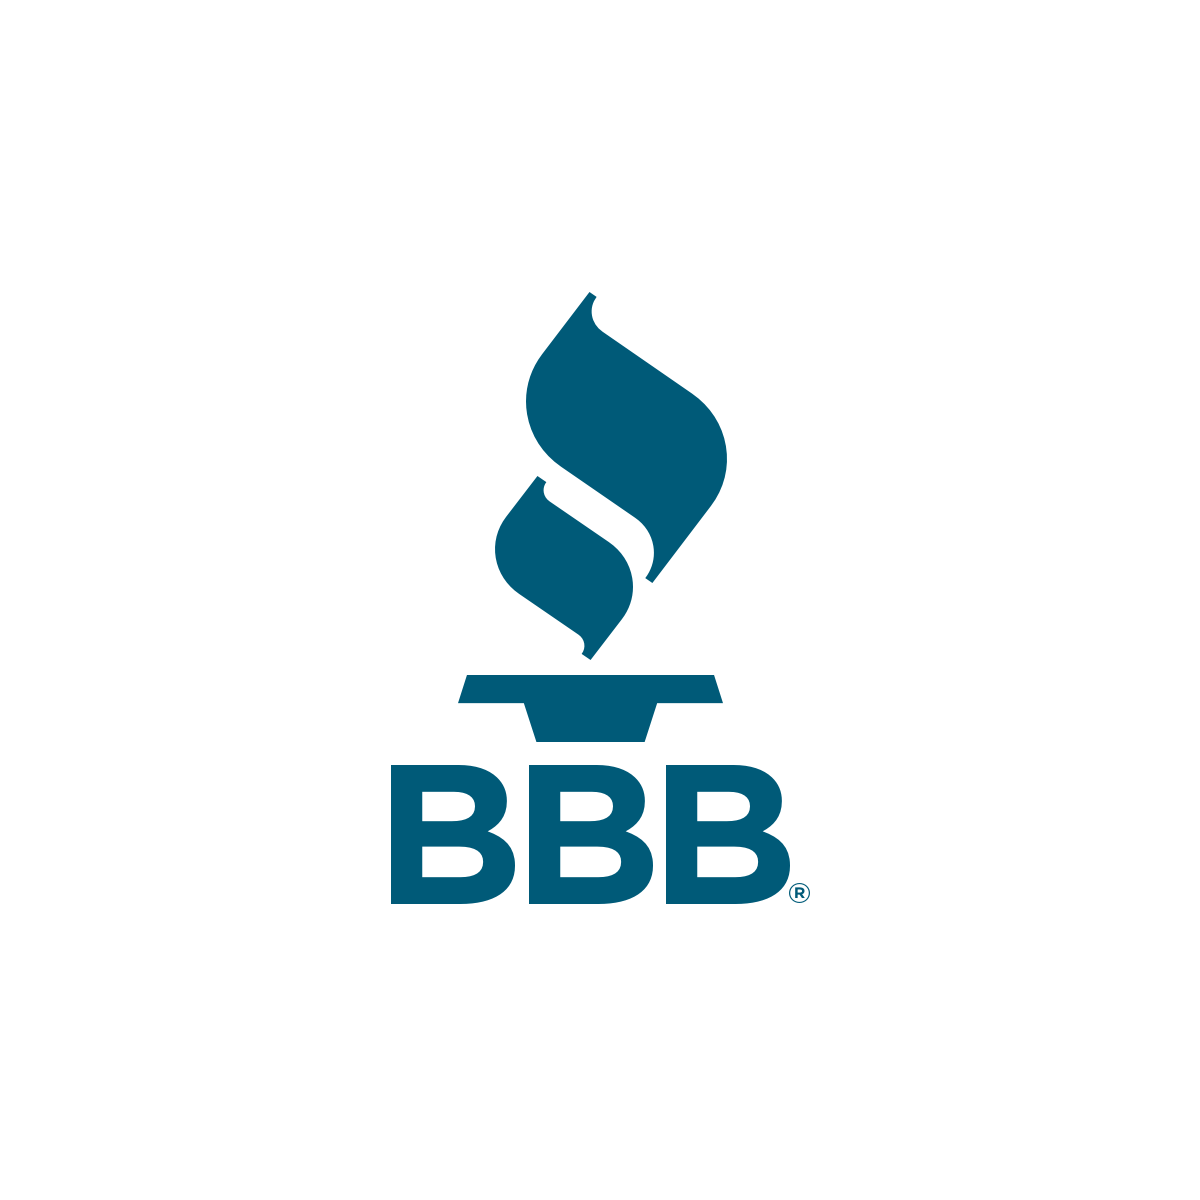 BBB (Better Business Bureau) Logo